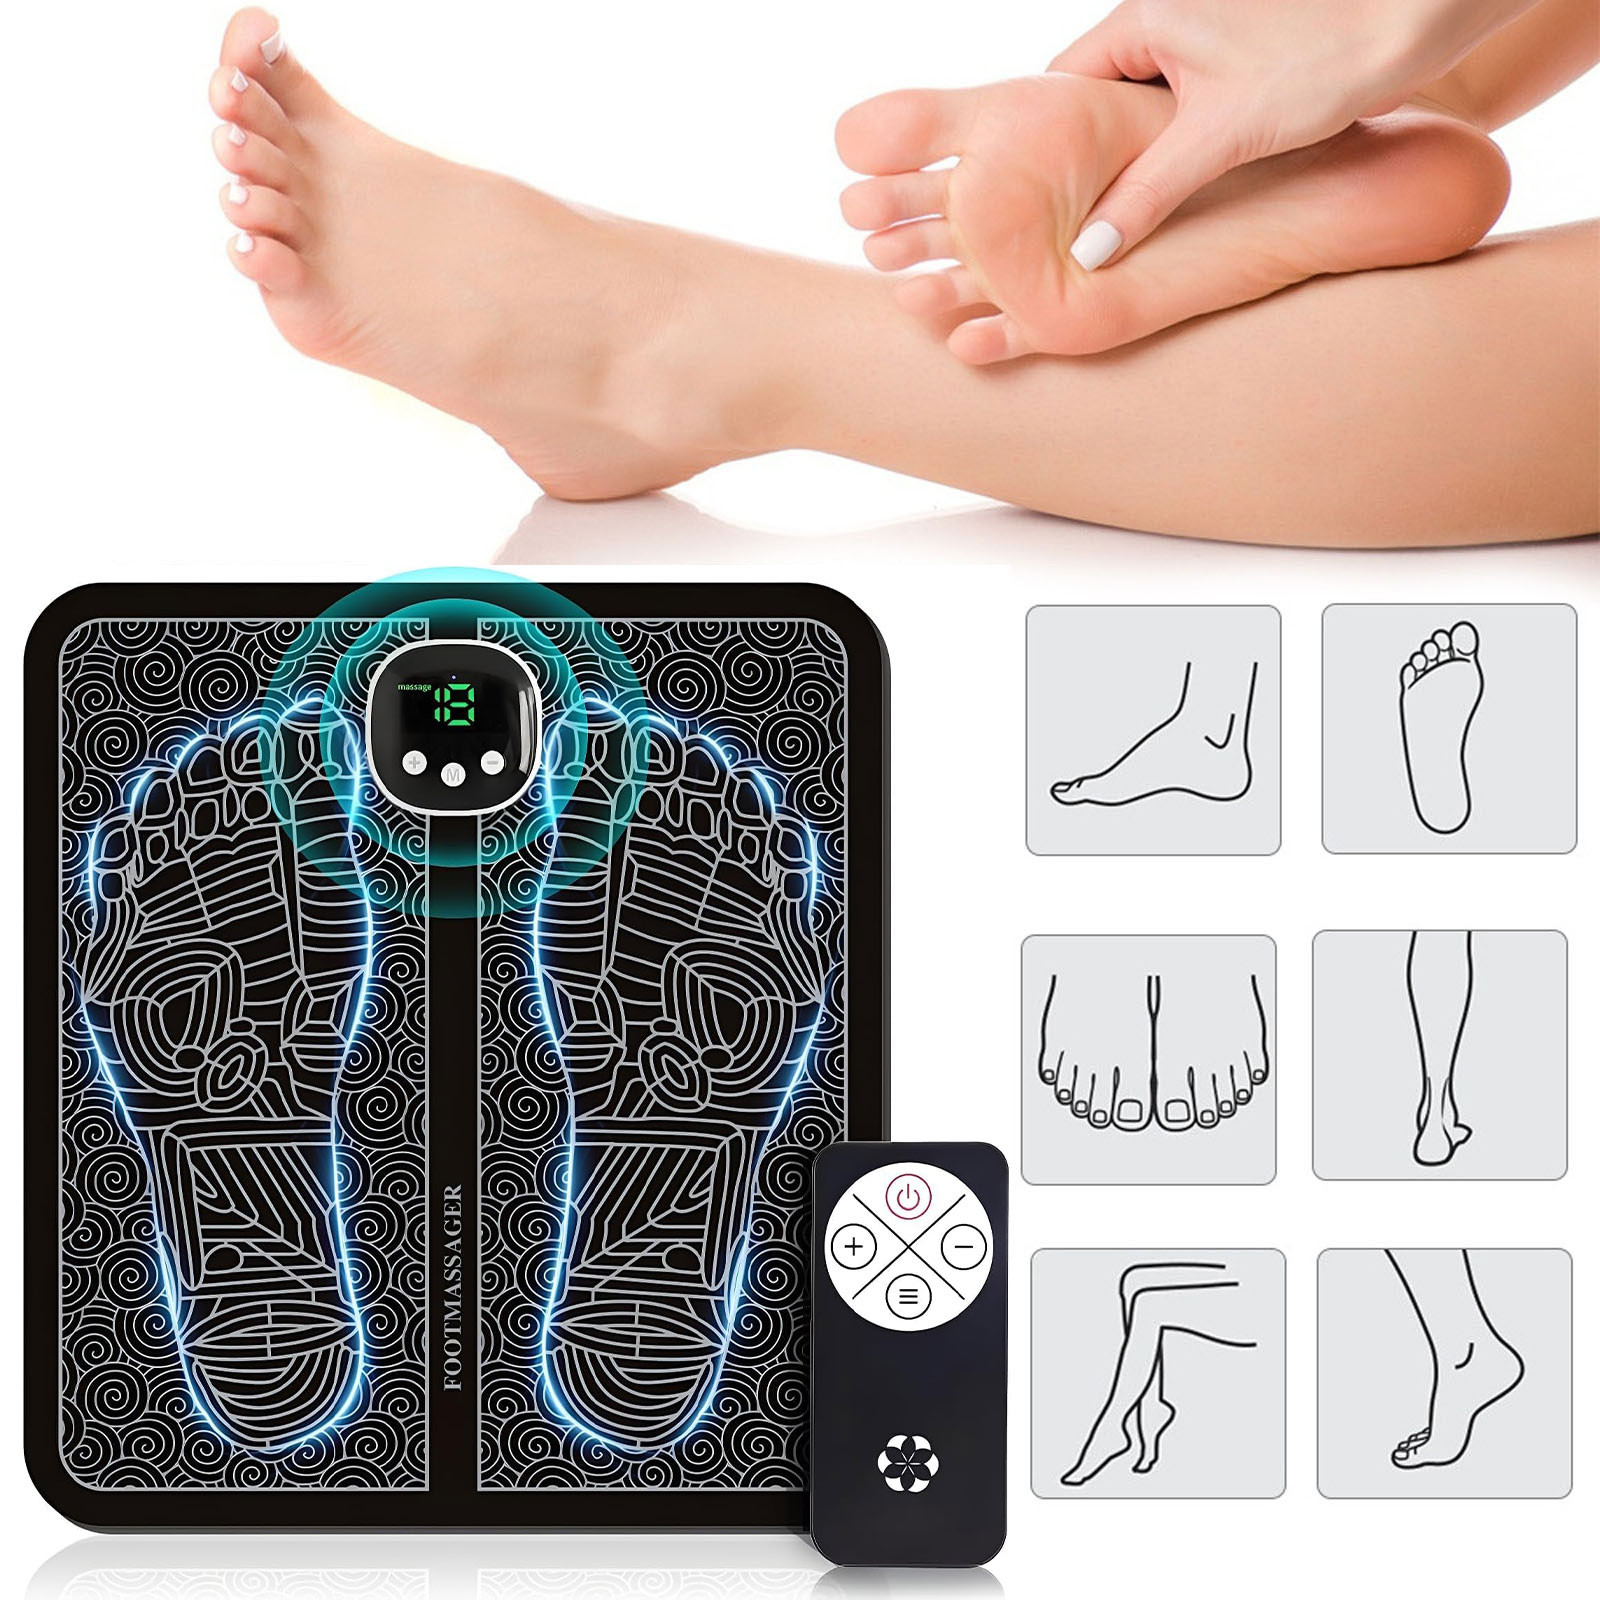 Foot Massager Mat,Foot Massager For Neuropathy Feet, Whole Body ...